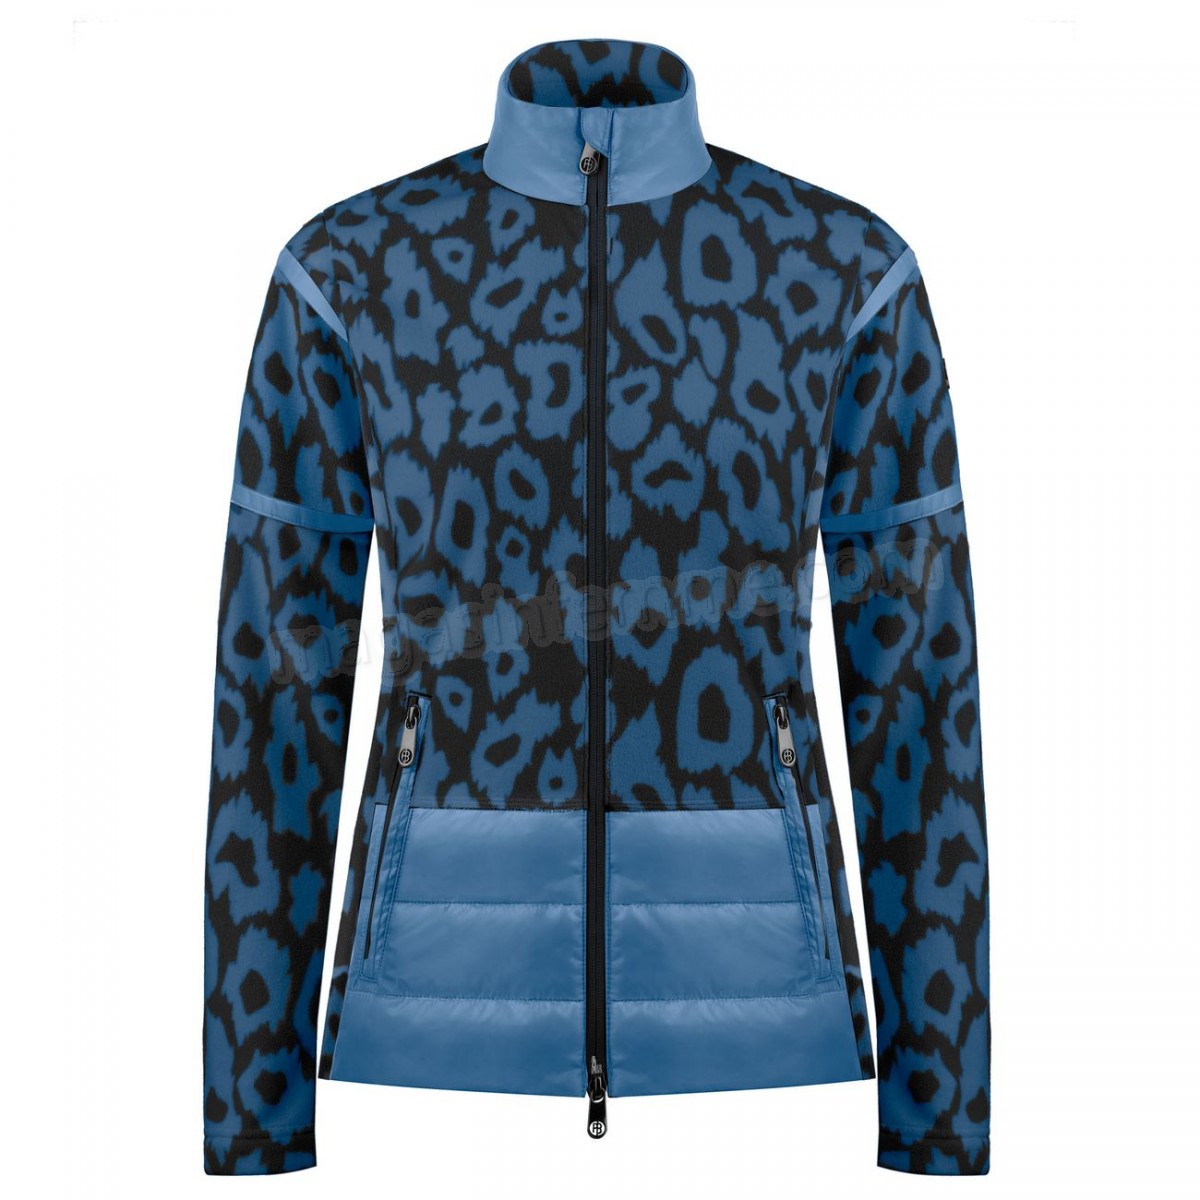 Poivre Blanc-Sports d'hiver femme POIVRE BLANC Veste Polaire Poivre Blanc Hybrid Fleece Jacket 1601 Panther Blue Femme en solde - -1